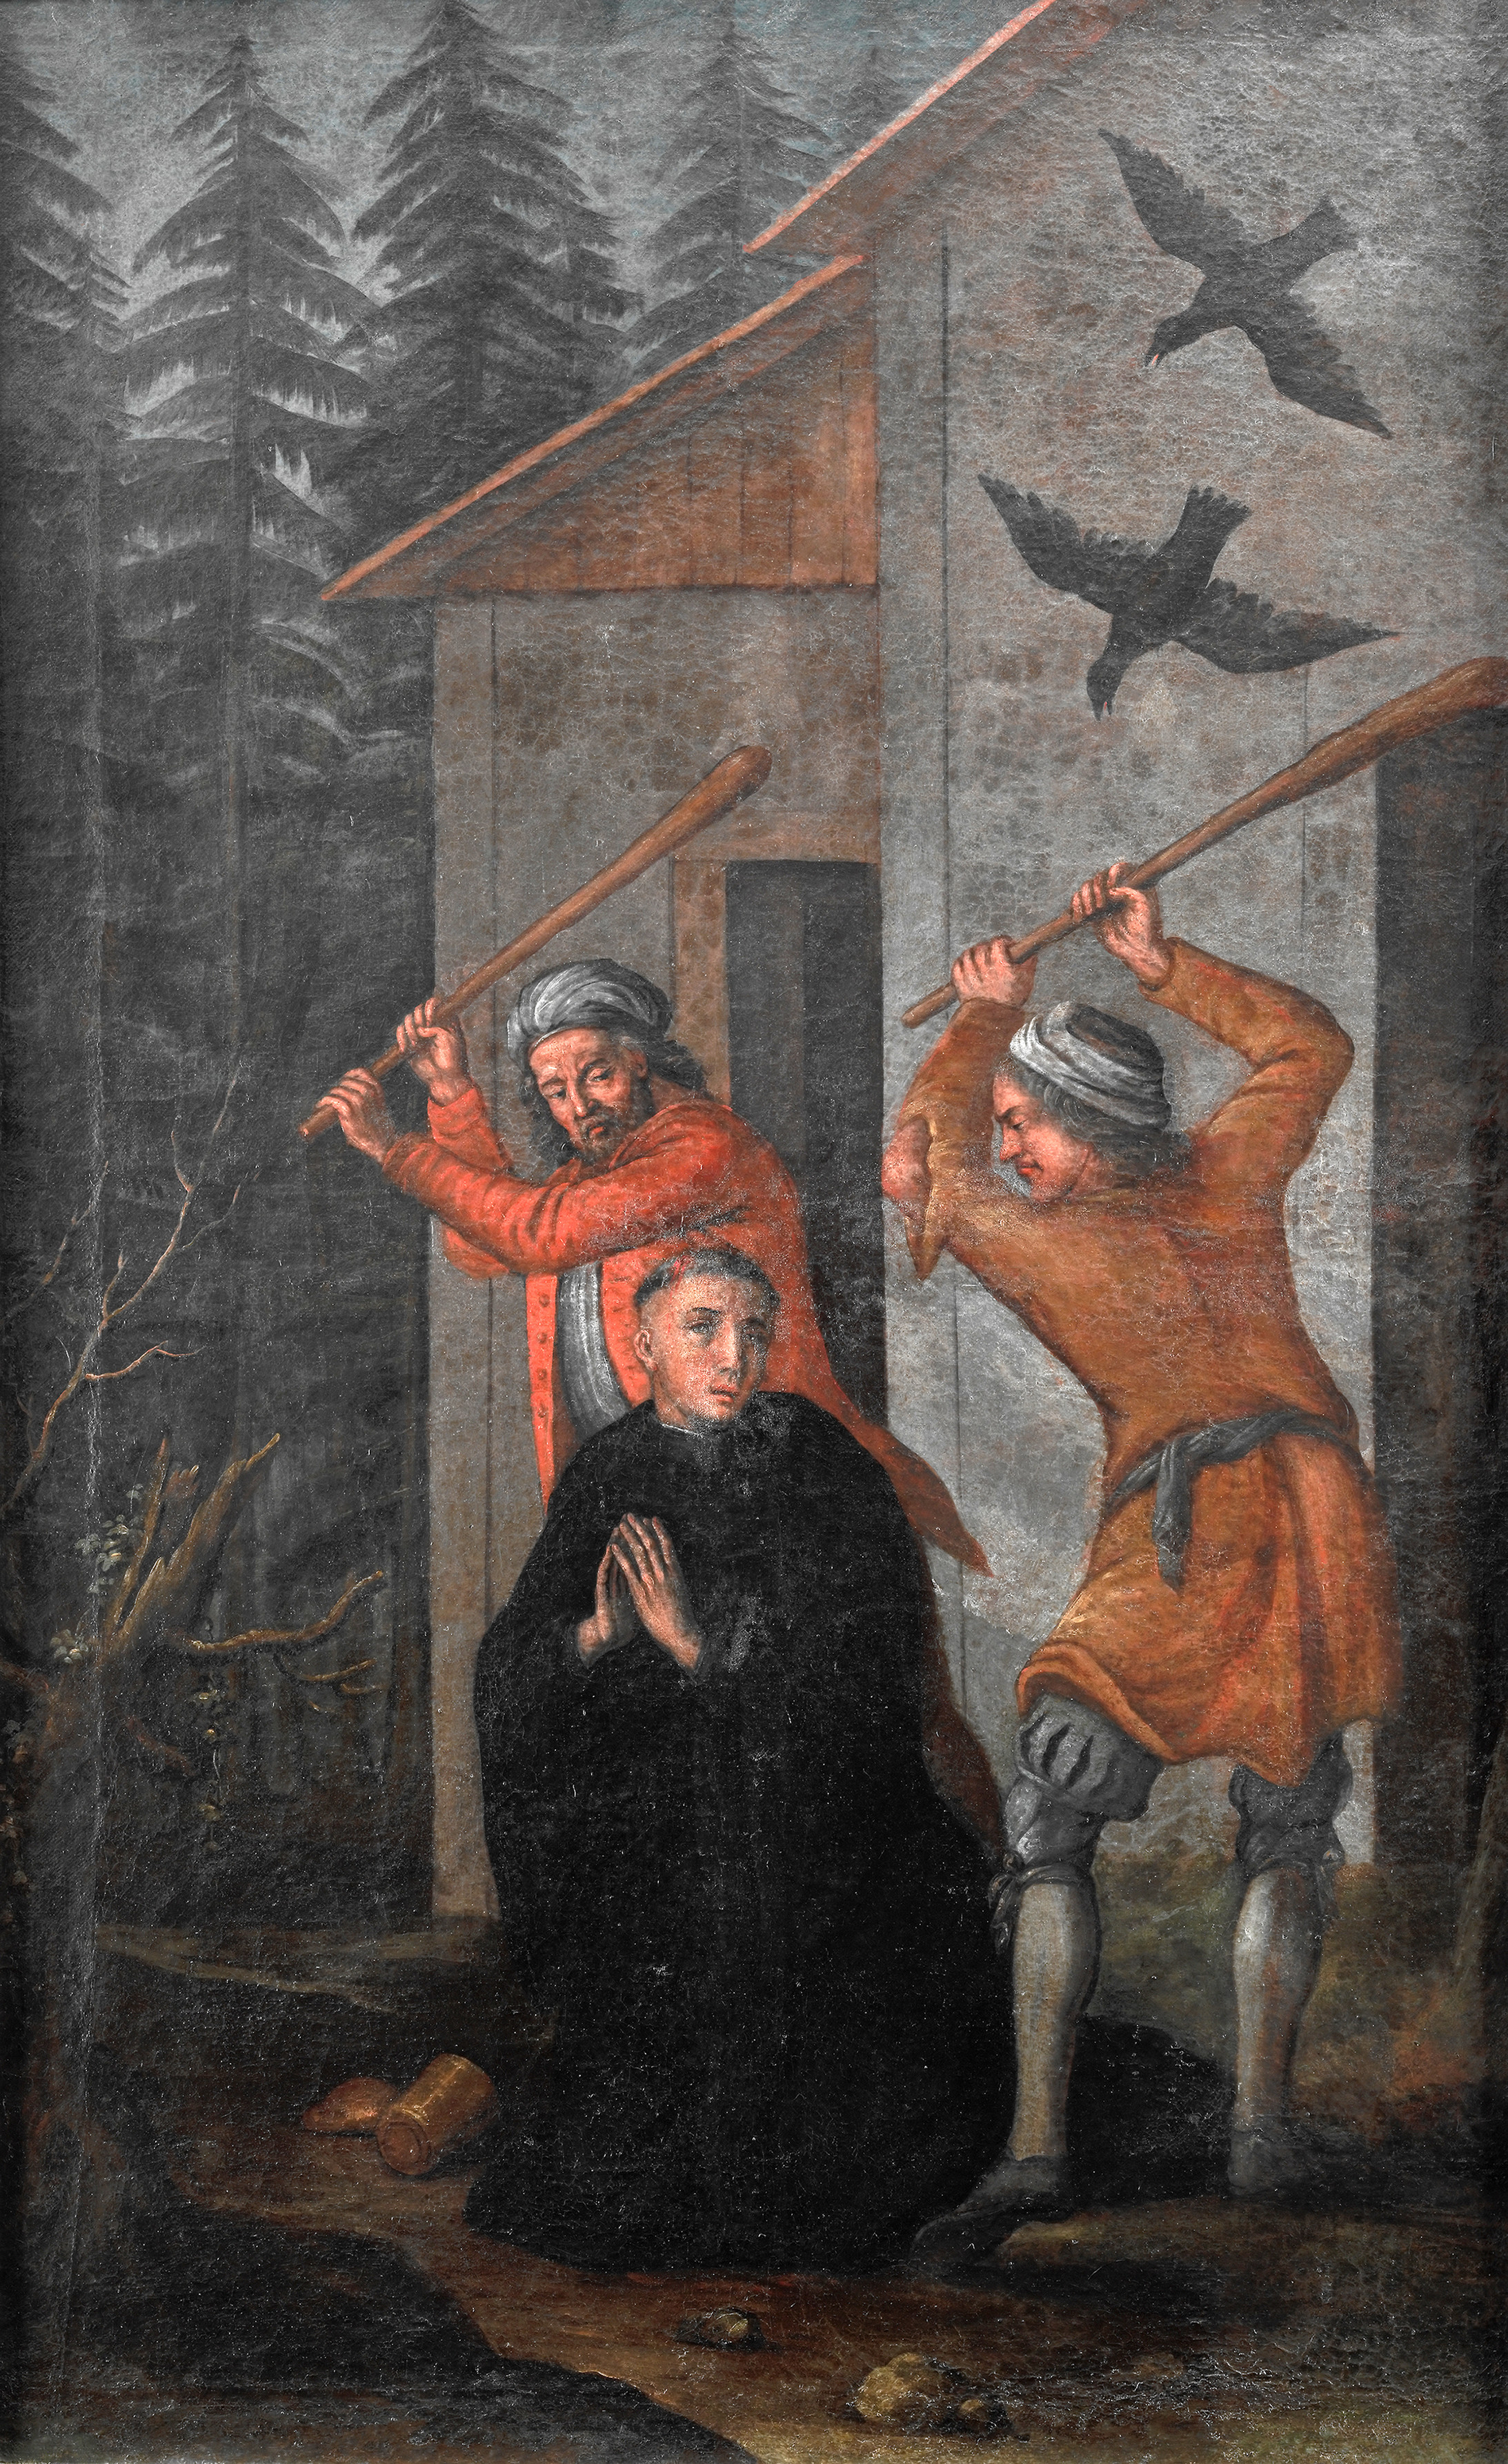 Meinrad wird von zwei Räubern ermordet. Kloster Einsiedeln, Kunstsammlung. Foto: Schweizerisches Nationalmuseum